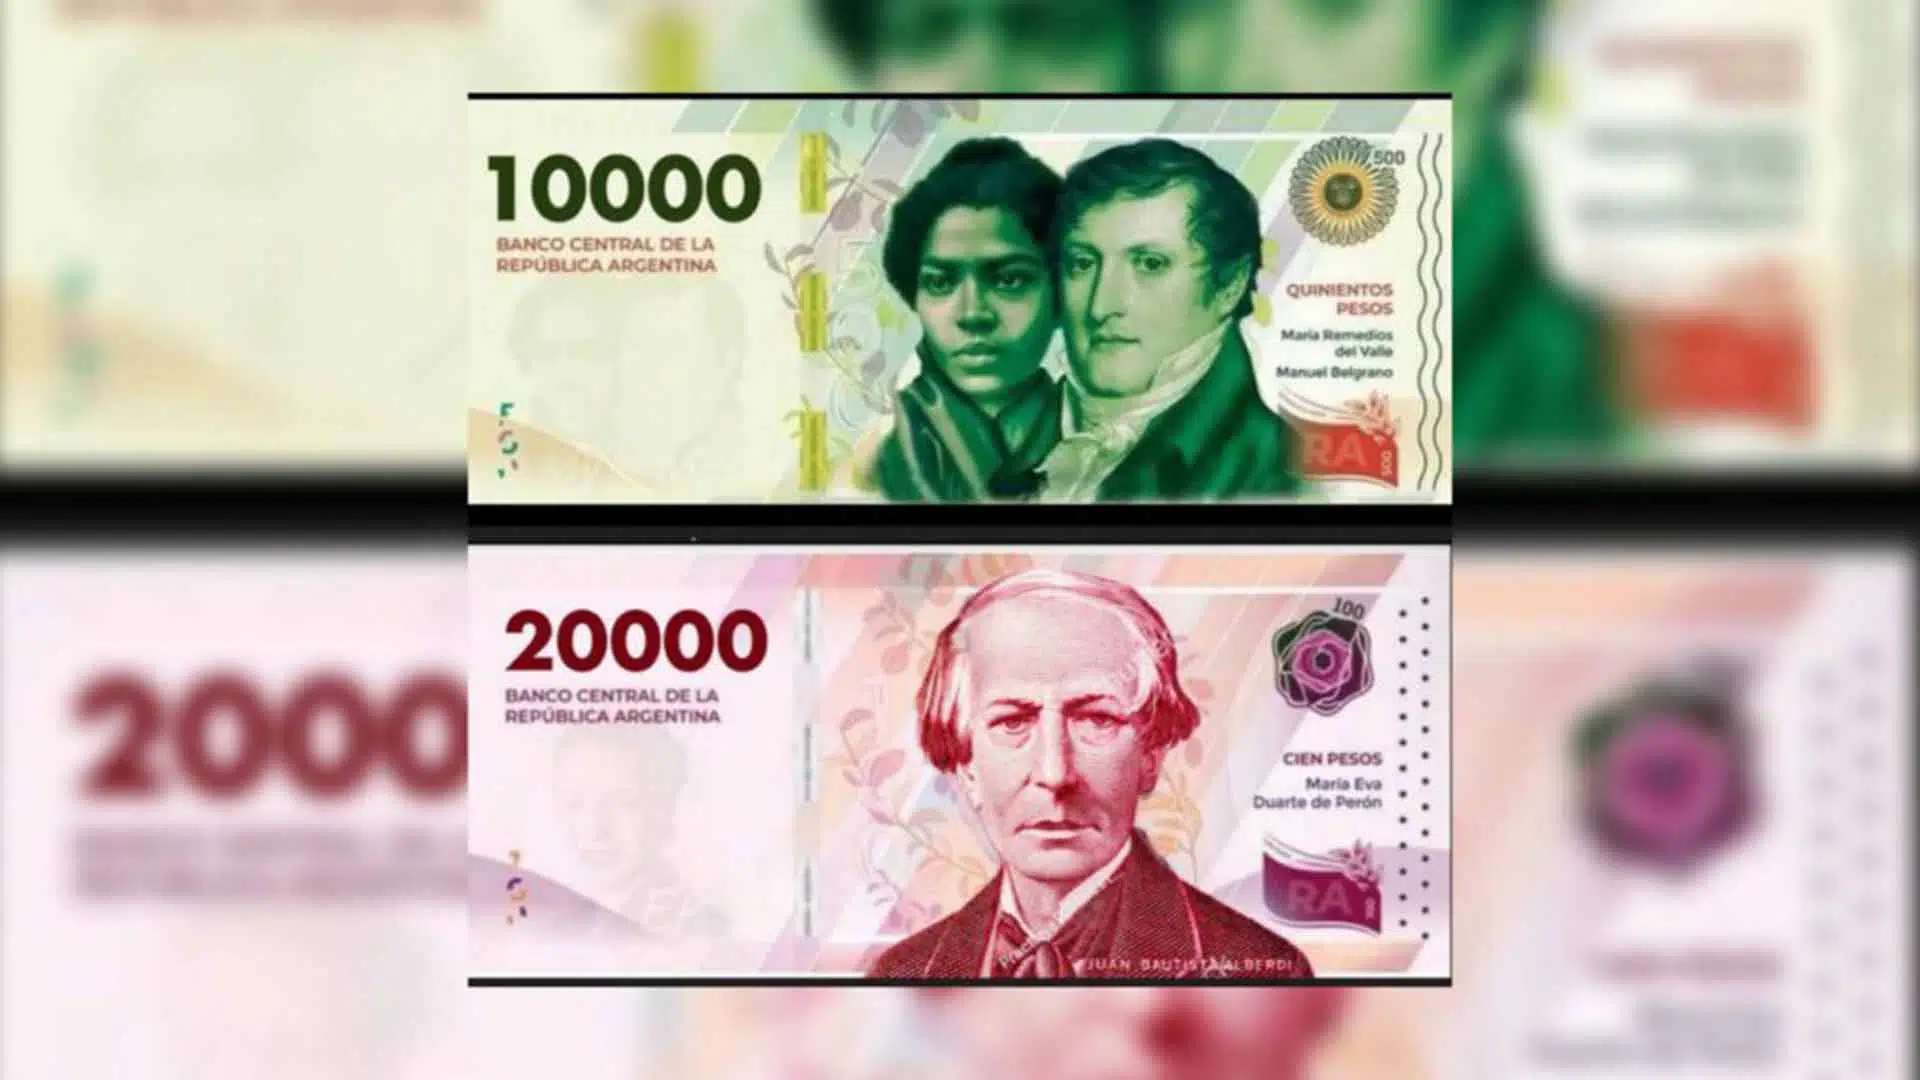 El Banco Central Anuncia La Emisión De Billetes De 10000 Y 20000 El Diario De Pilar 9453